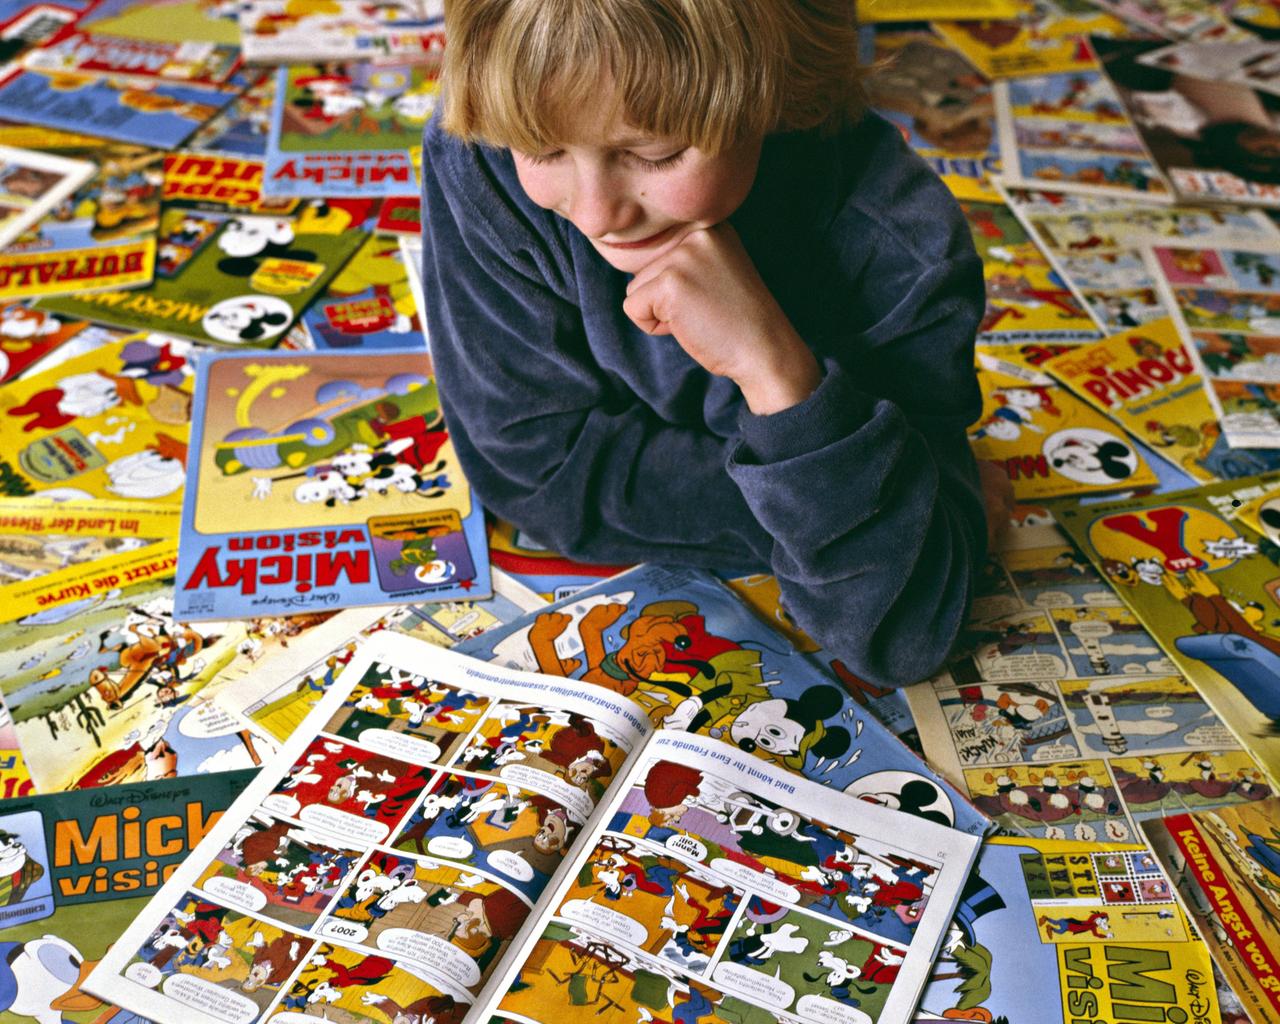 Ein Junge liegt auf zahlreichen Micky-Maus-Comicheften und liest ein Heft.